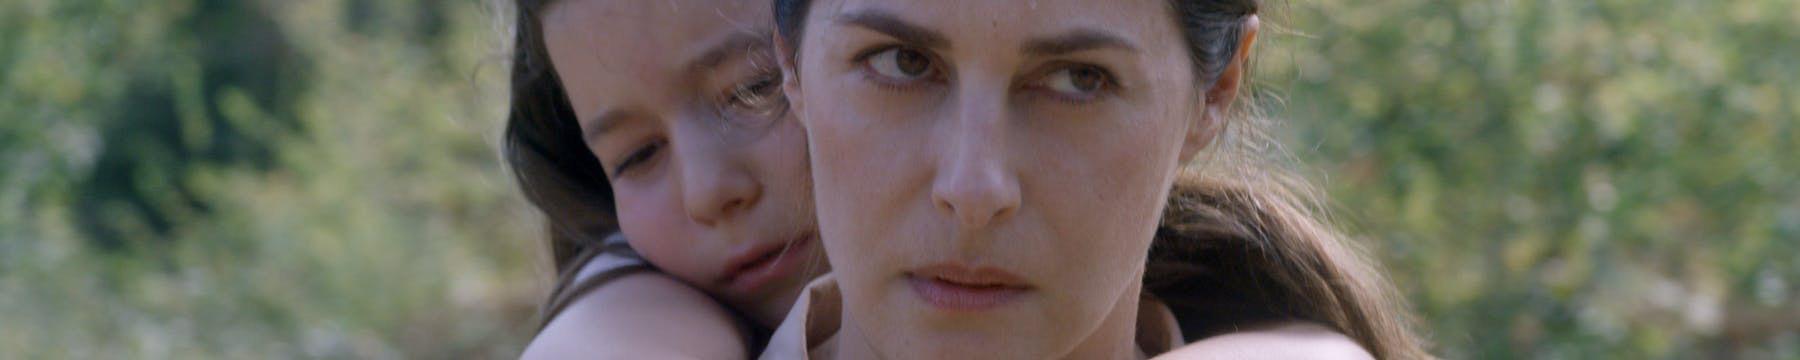 Une image du film "Yaban", un long métrage de Tareq Daoud avec Amira Casar. [RTS - IDIP Films]